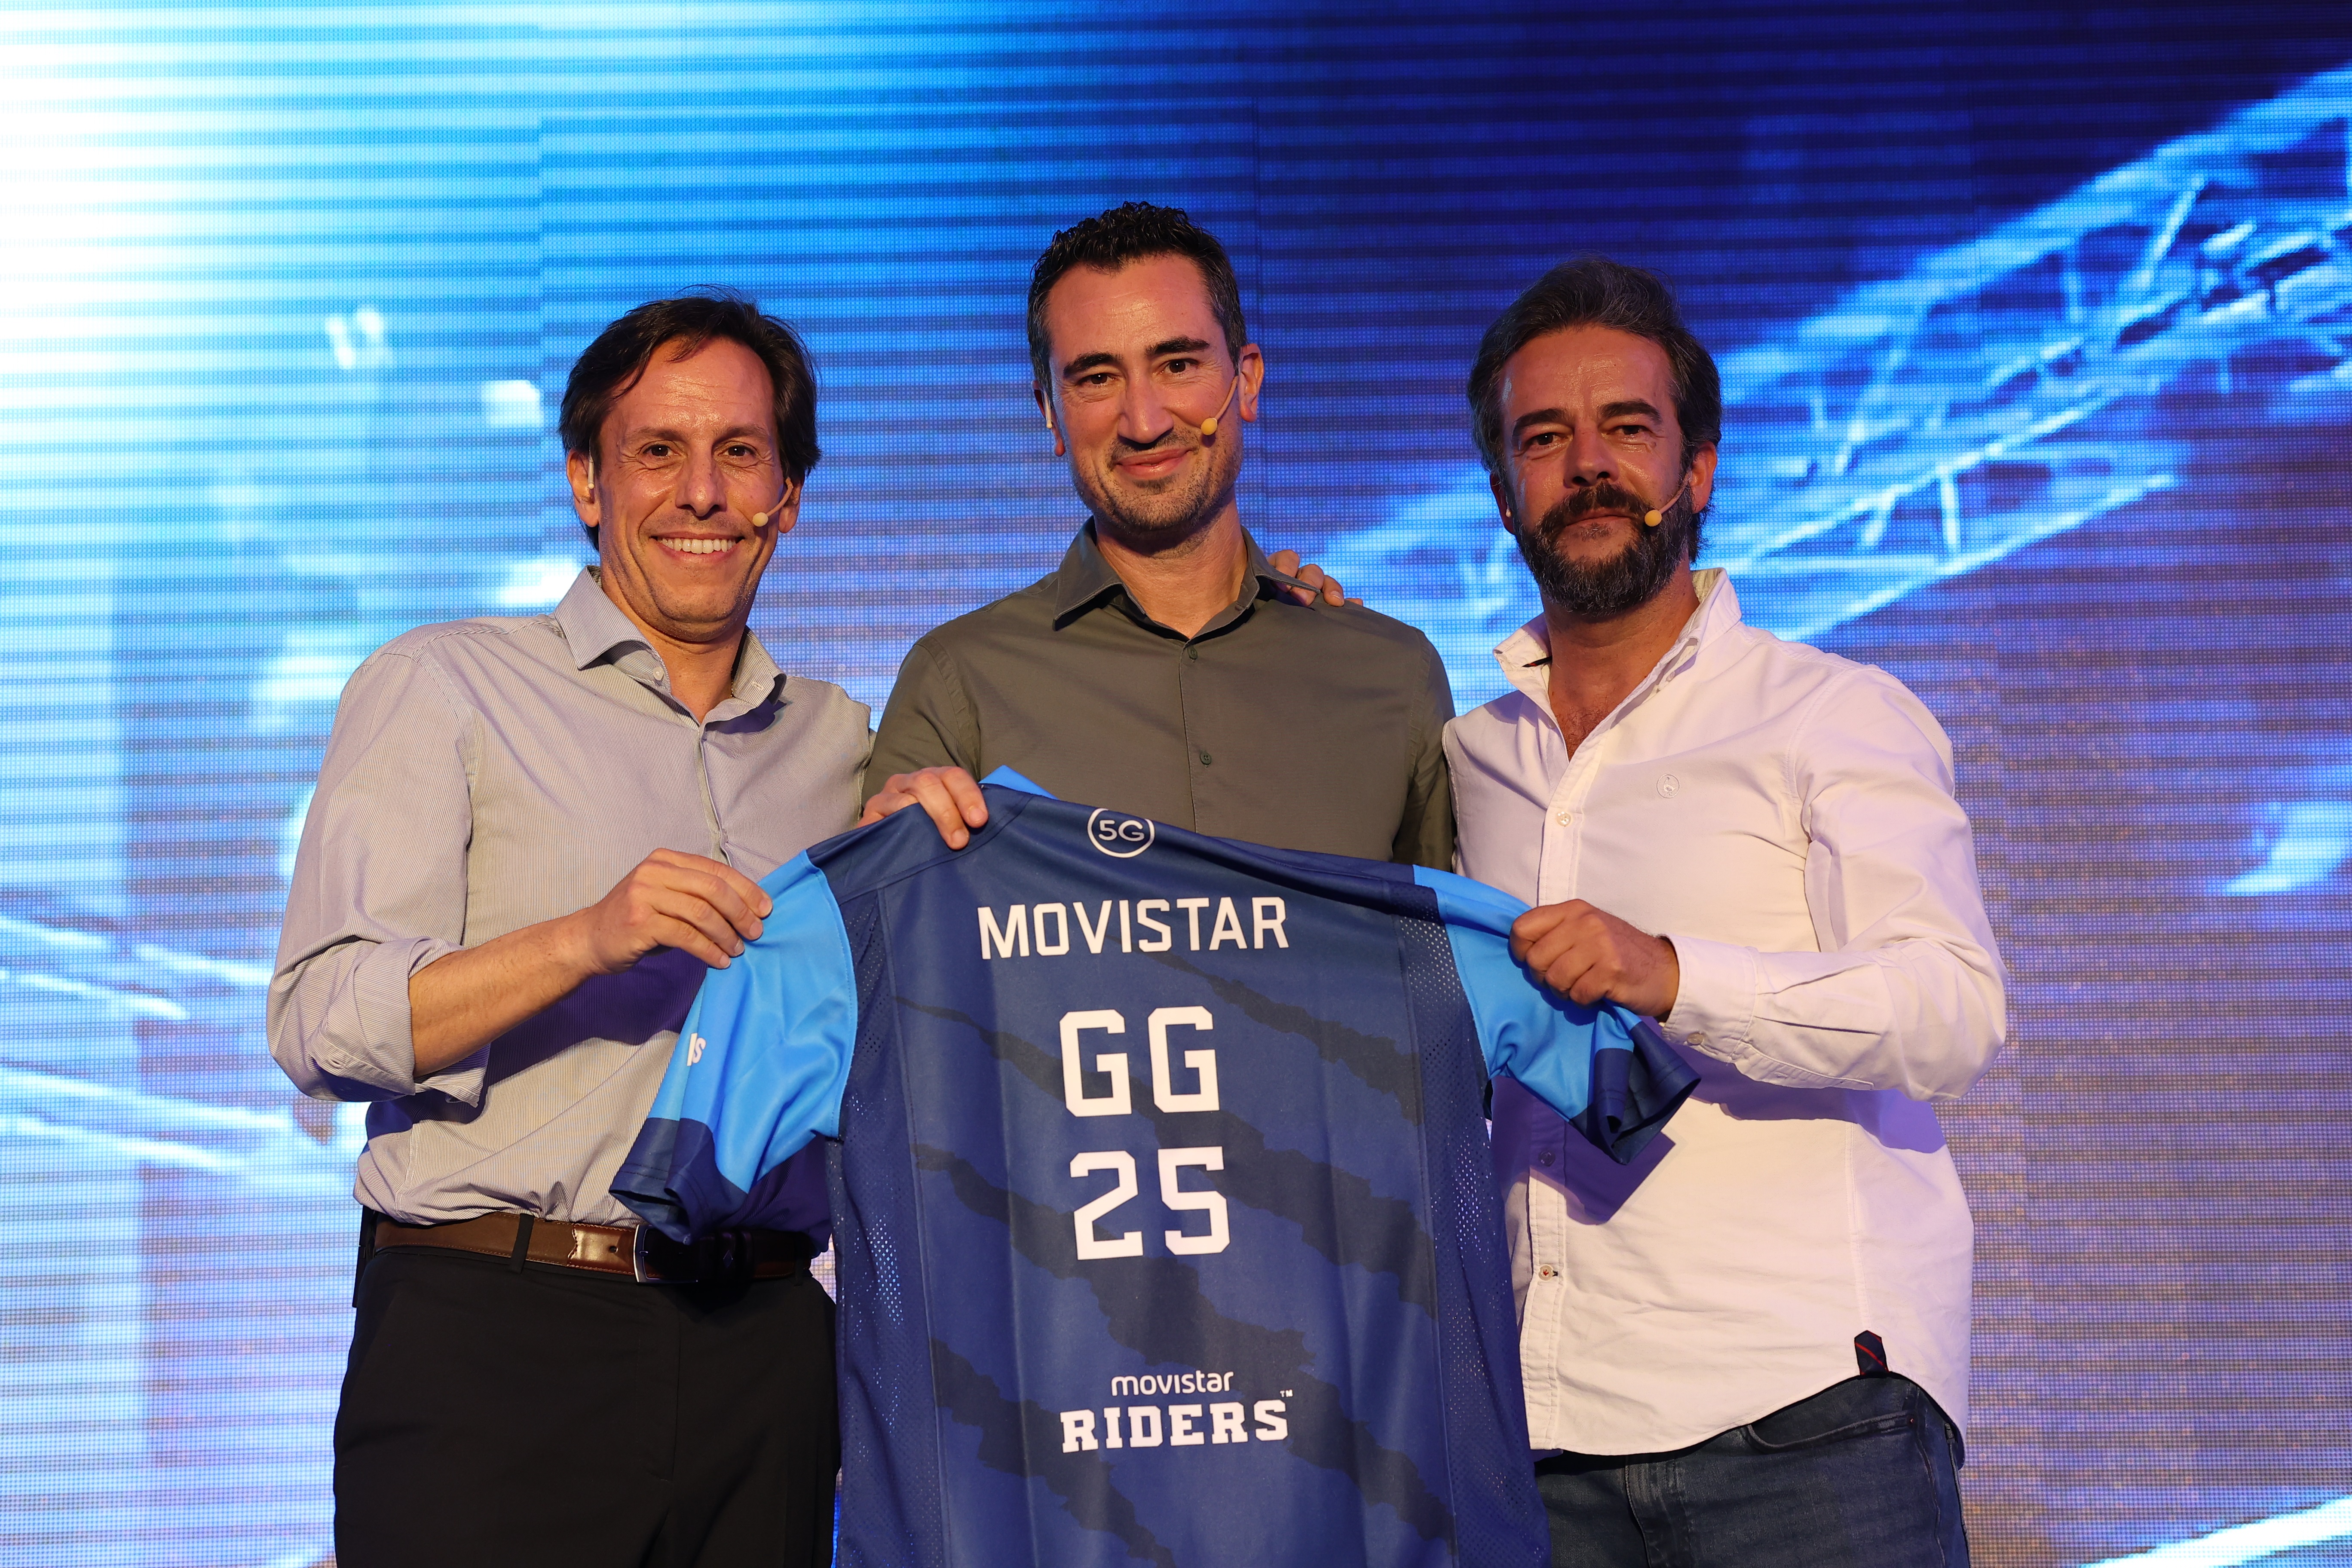 (De izquierda a derecha) Óscar Candiles, Carlos García-Acevedo y Aitor Goyenechea en la foto oficial de la renovación de patrocinio